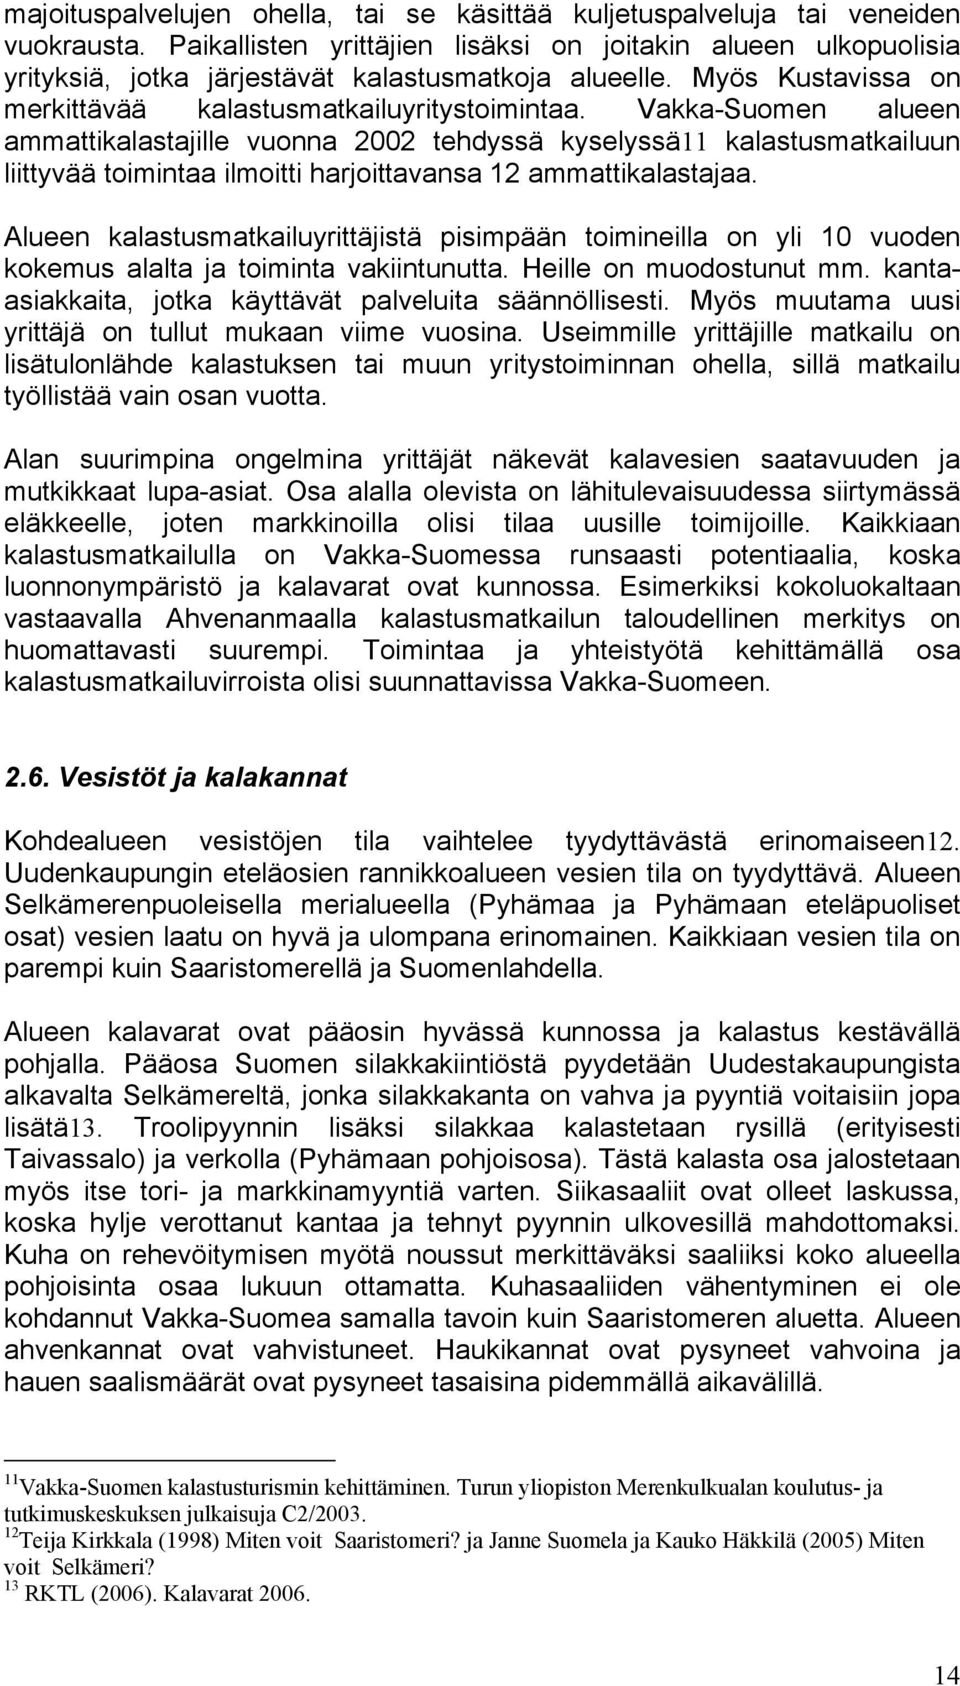 Vakka-Suomen alueen ammattikalastajille vuonna 2002 tehdyssä kyselyssä11 kalastusmatkailuun liittyvää toimintaa ilmoitti harjoittavansa 12 ammattikalastajaa.